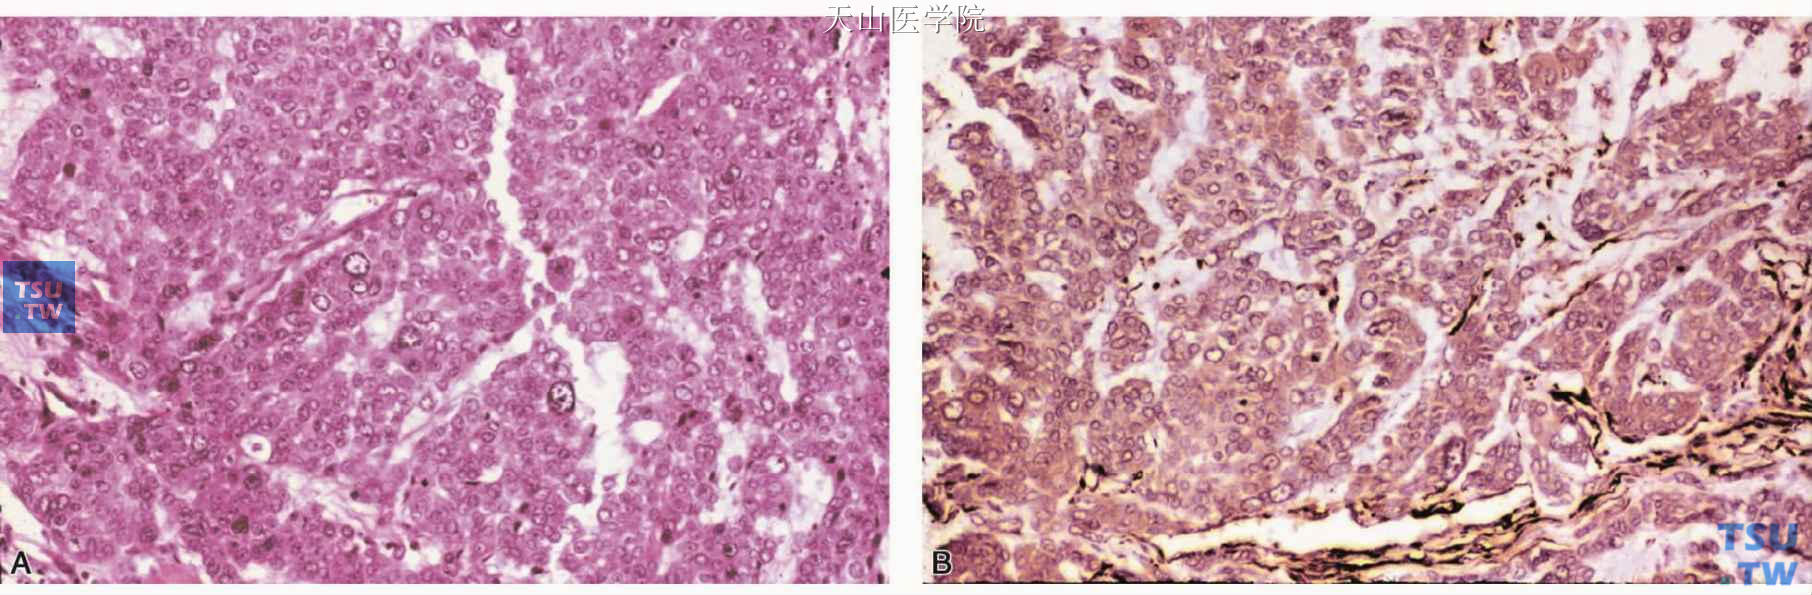 上皮样细胞肌上皮癌 A.肿瘤细胞类似于腺上皮细胞；B.肿瘤细胞表达SMA，免疫组化染色